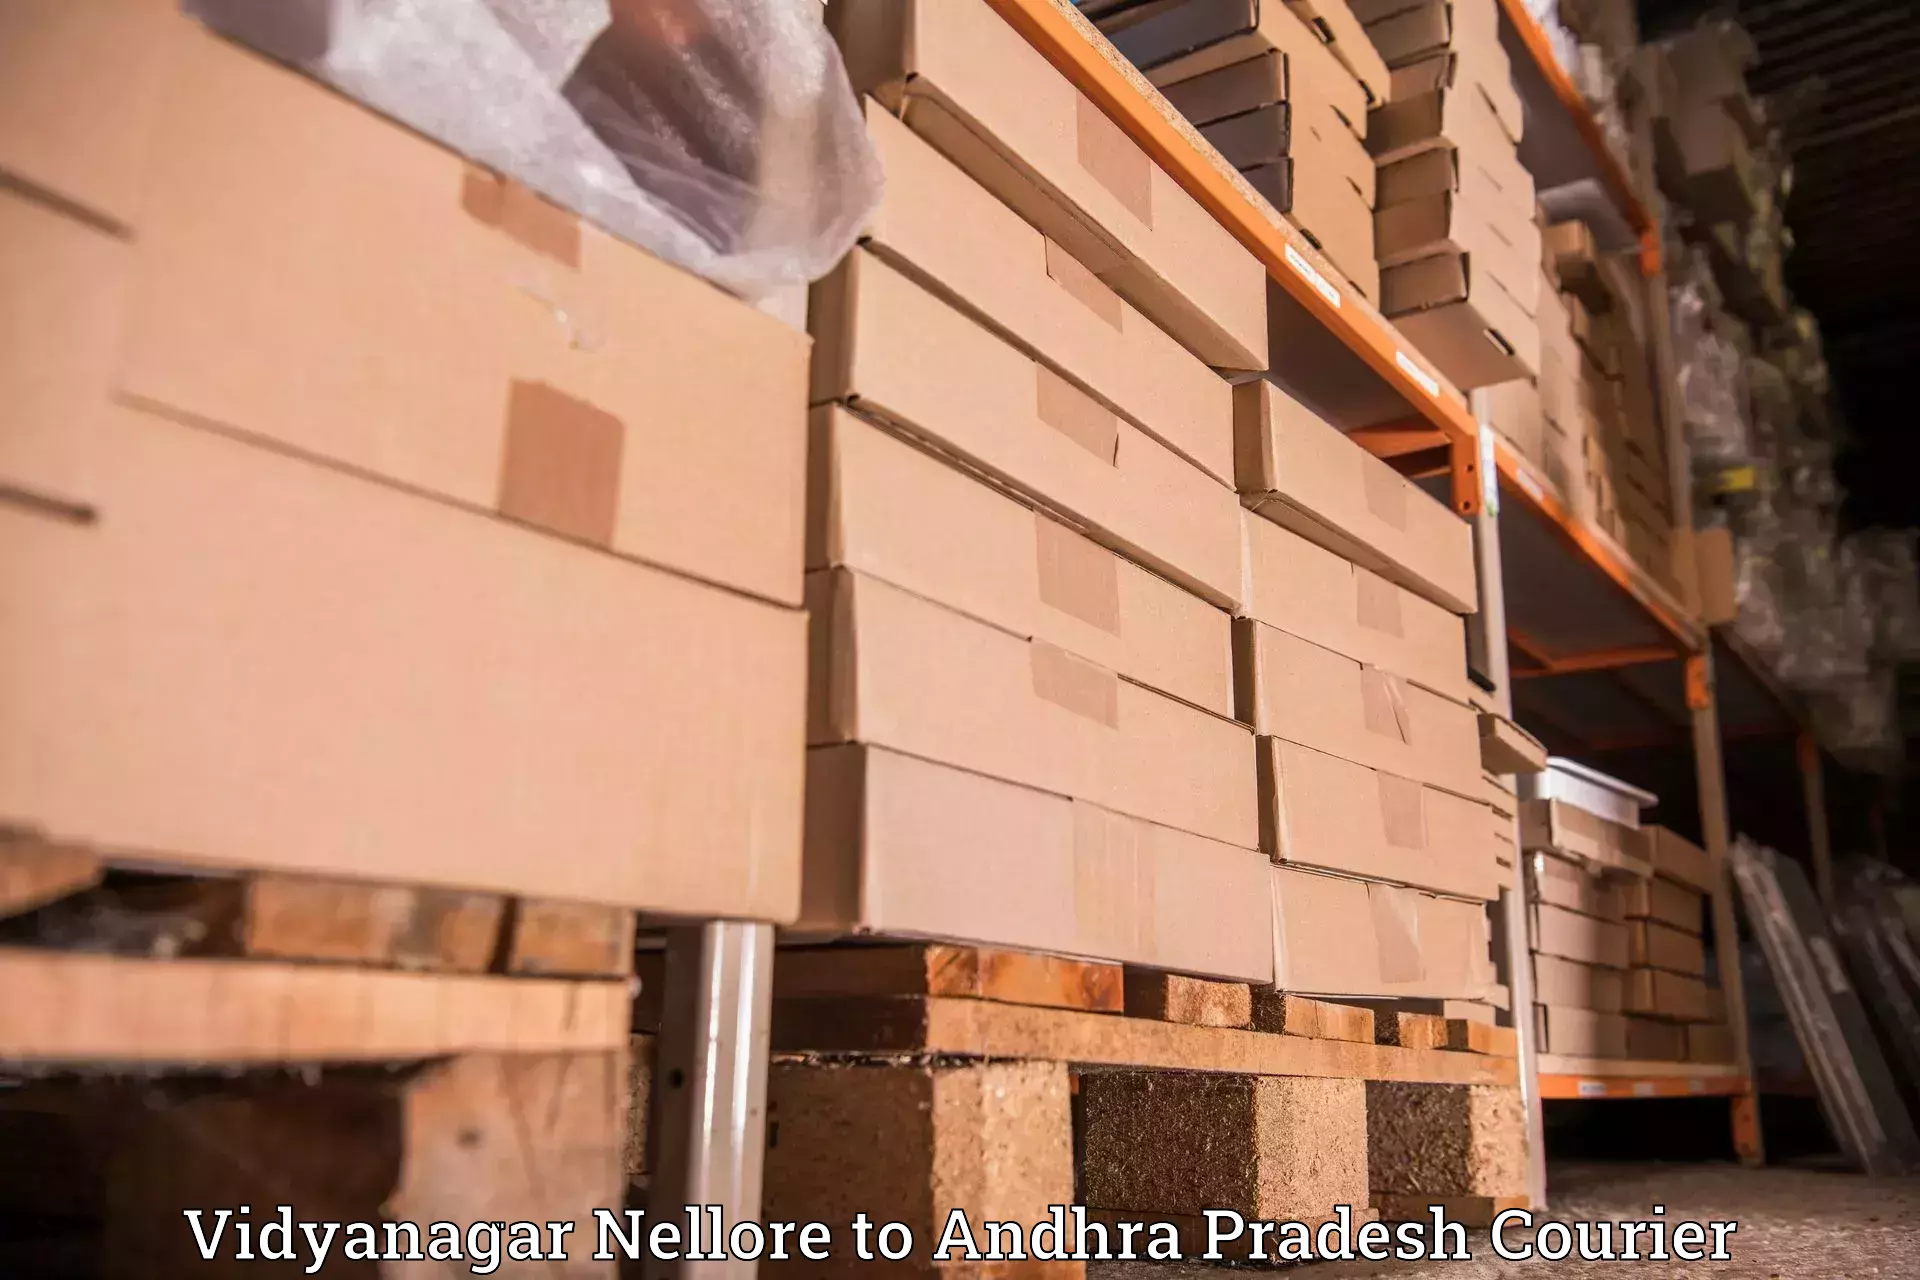 Personal courier services Vidyanagar Nellore to Vuyyuru